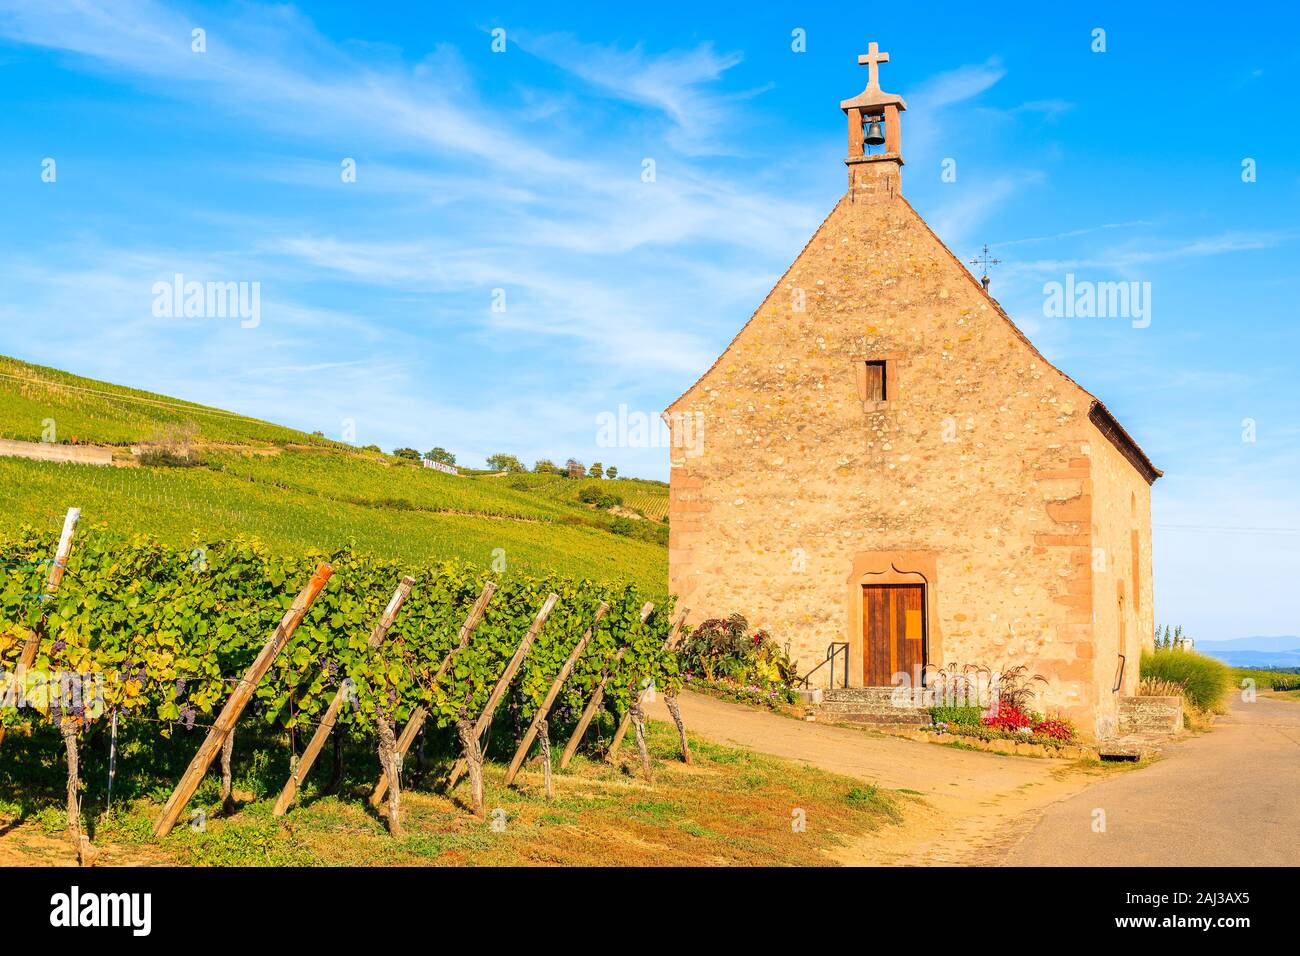 Vecchia chiesa vicino a vigneti sulle colline, Ingolsheim village, Alsazia strada del vino, Francia Foto Stock